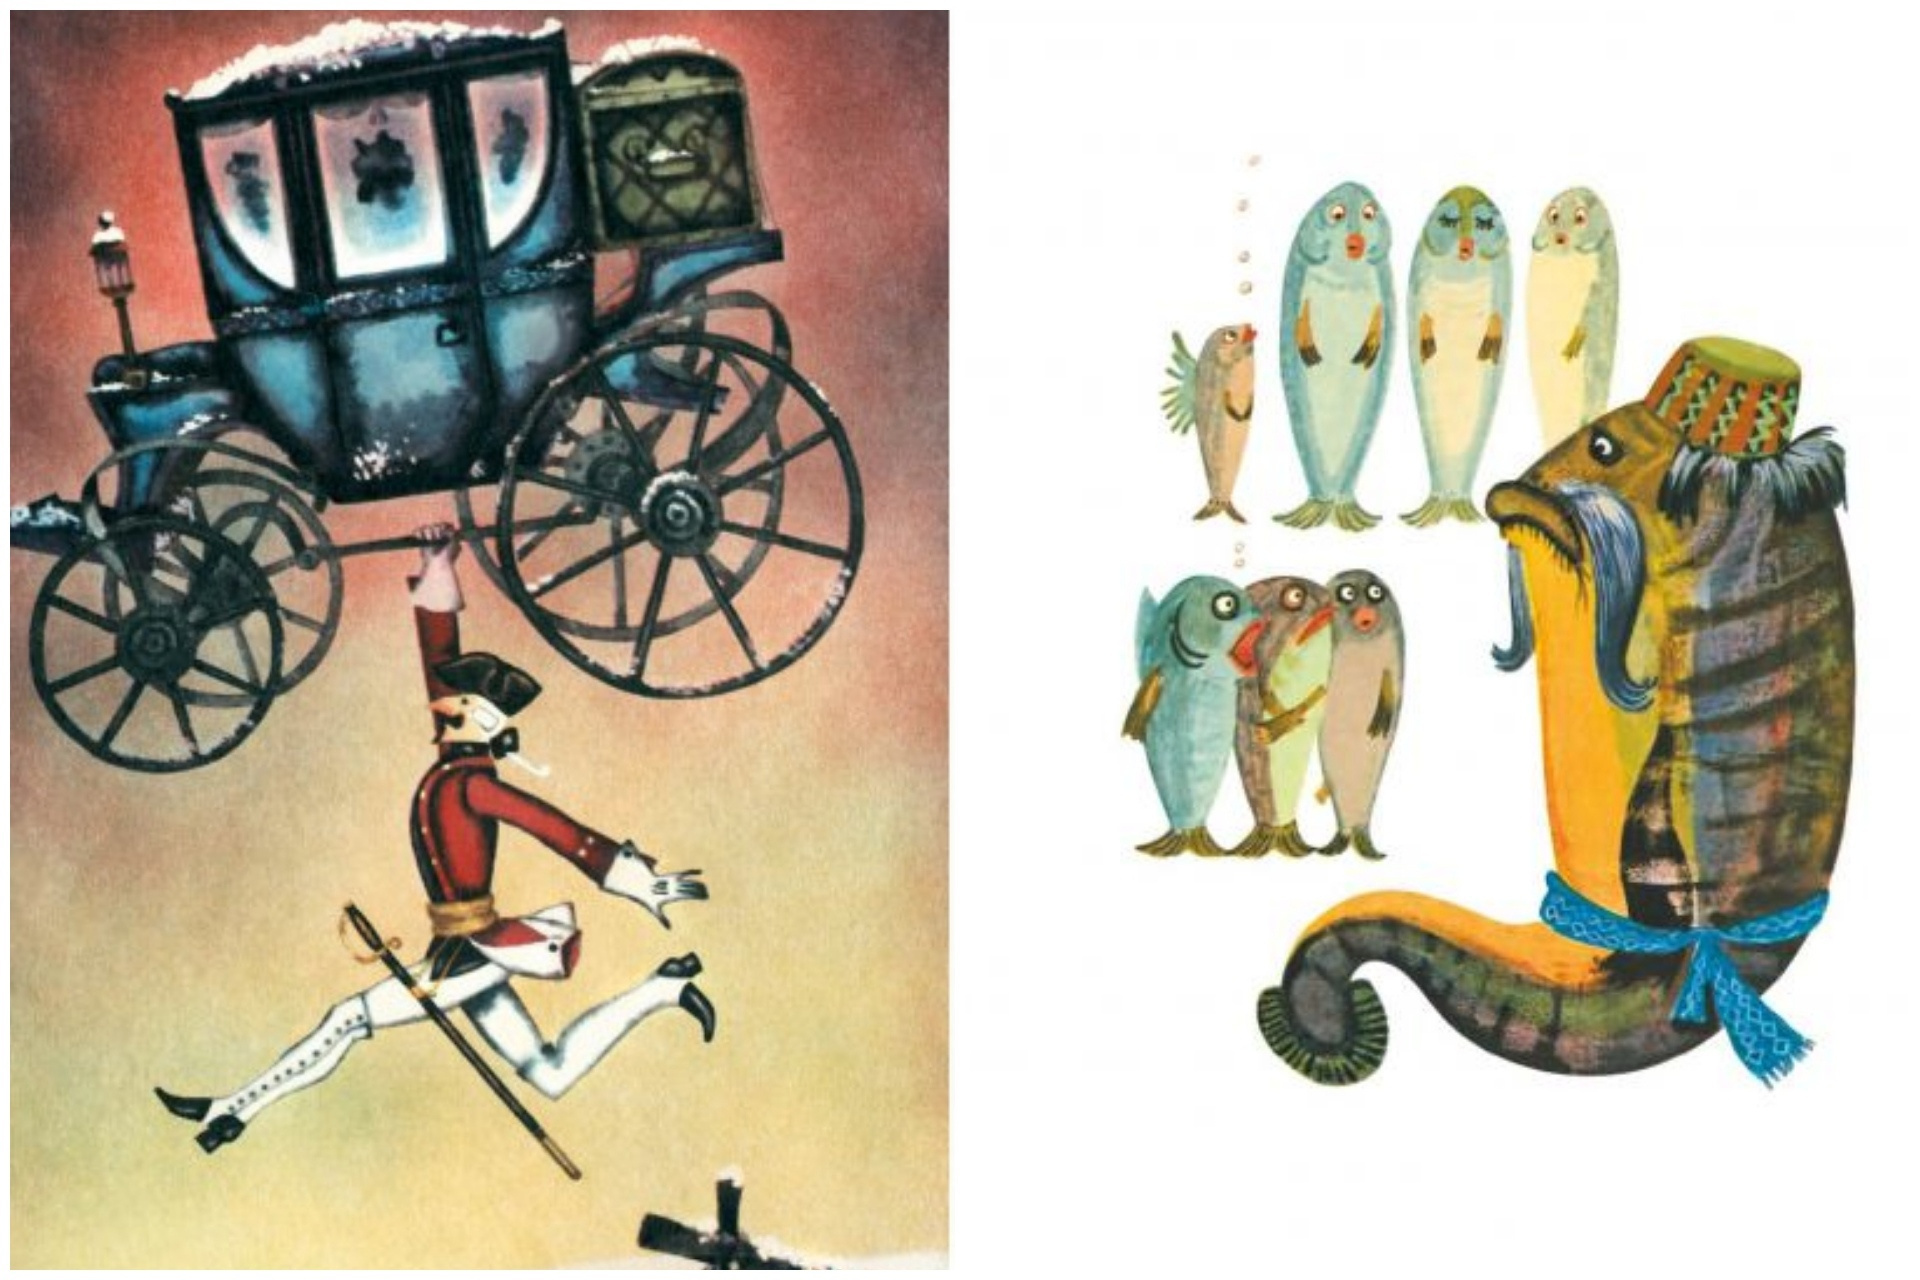 Слева — одна из иллюстраций к книге о приключениях барона Мюнхгаузена, справа — к сказкам Прикамья